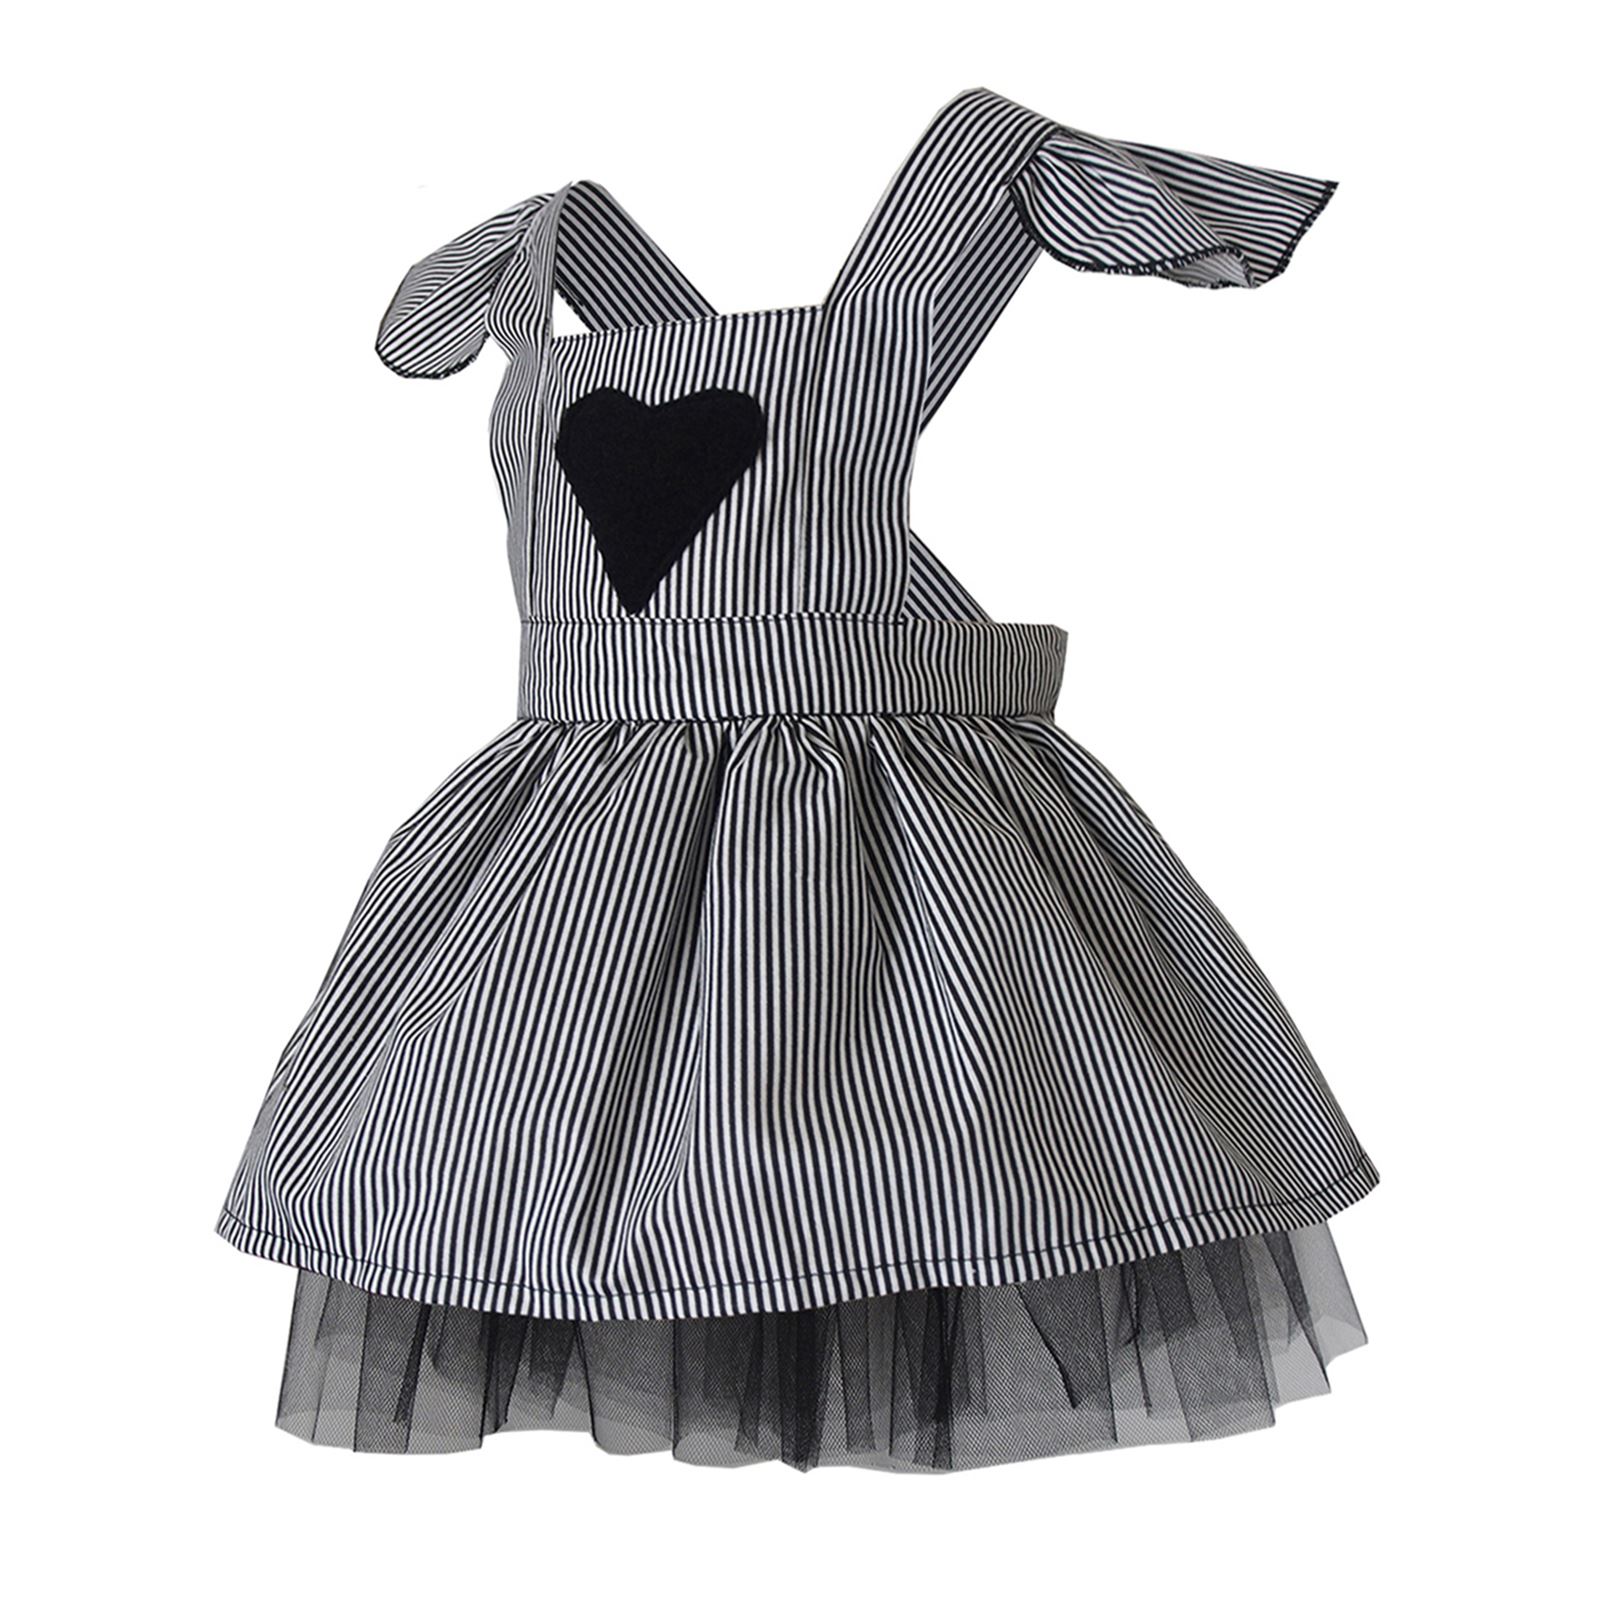 Shecco Babba Kız Çocuk Kolları Fırfırlı Tütü Elbise Taç Takım 1-5 Yaş Siyah-Beyaz